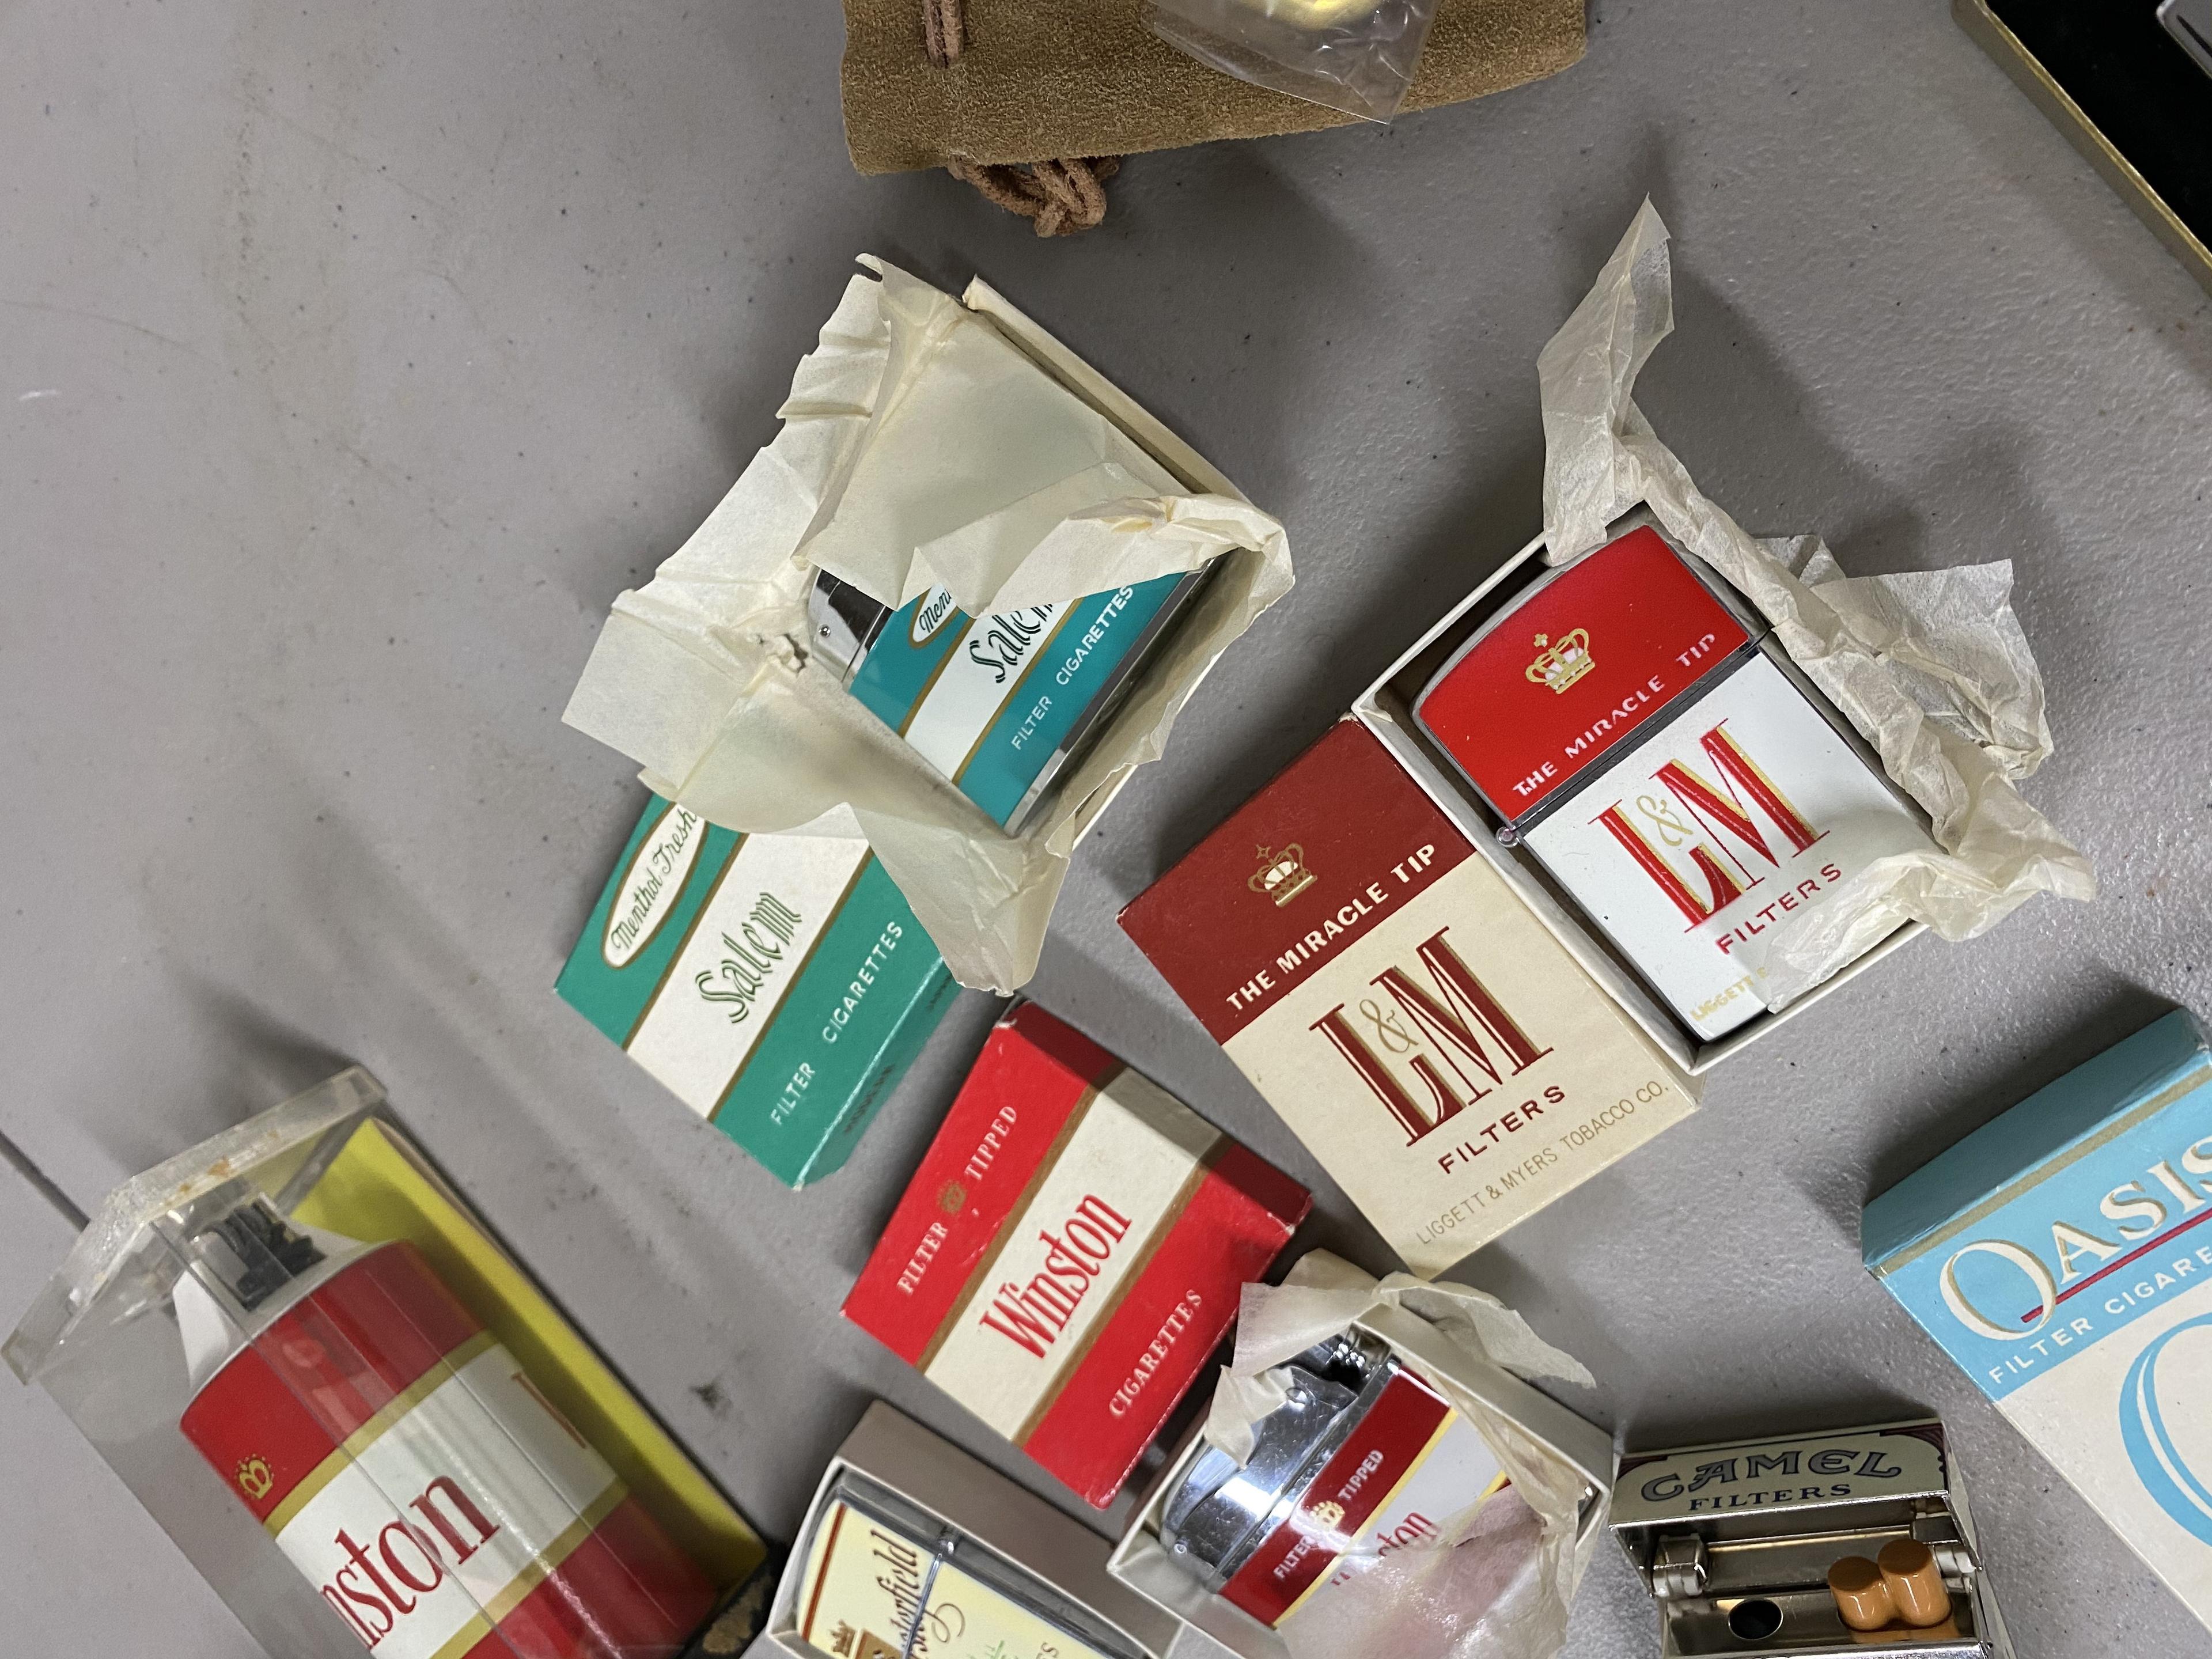 Large lot of vintage Cigarette Advertising Lighters